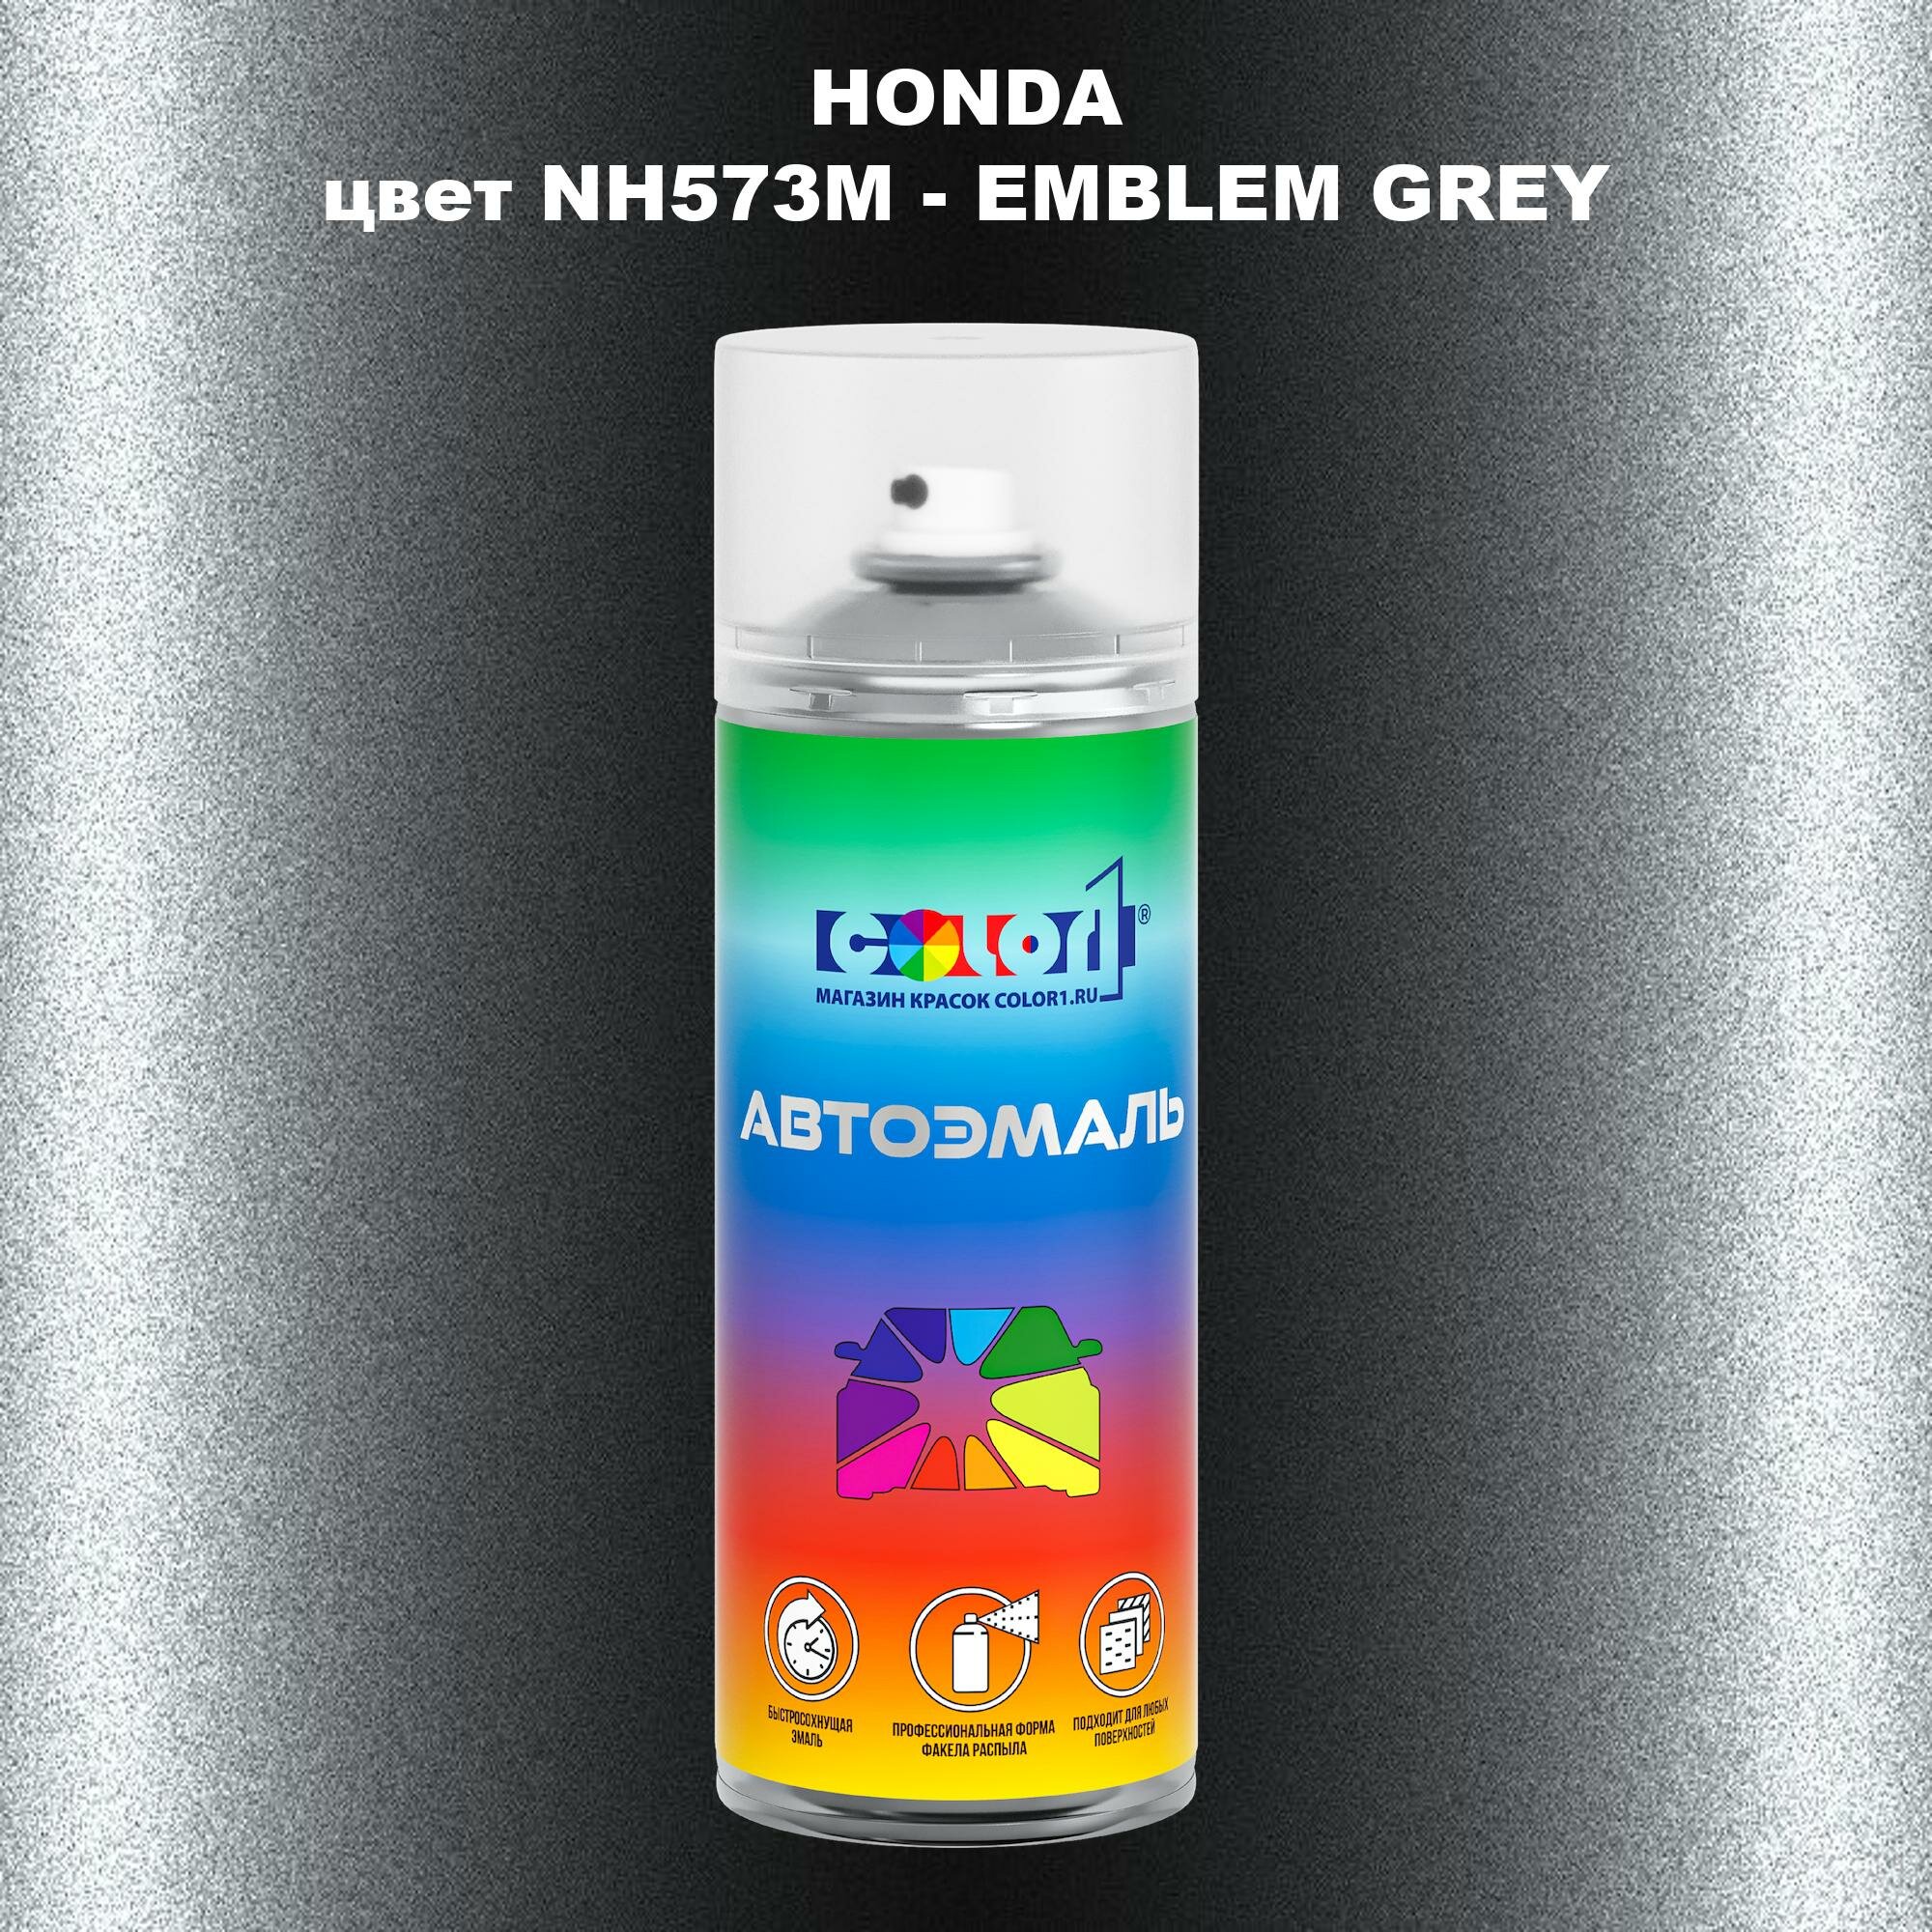 Аэрозольная краска COLOR1 для HONDA, цвет NH573M - EMBLEM GREY